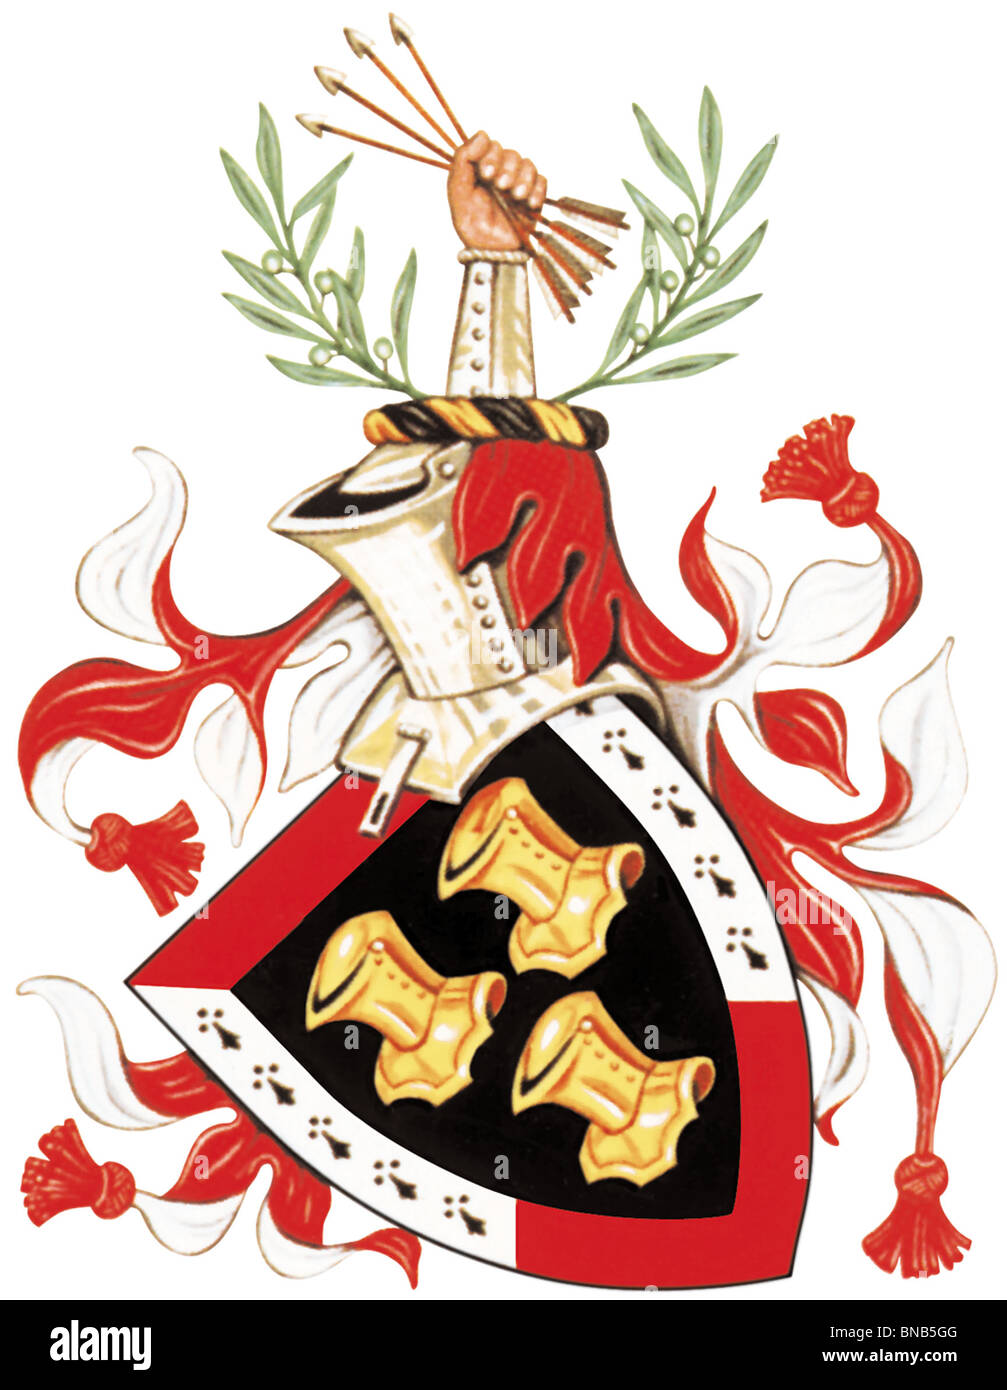 El JFK's los escudos de armas de la República de Irlanda. Foto de stock